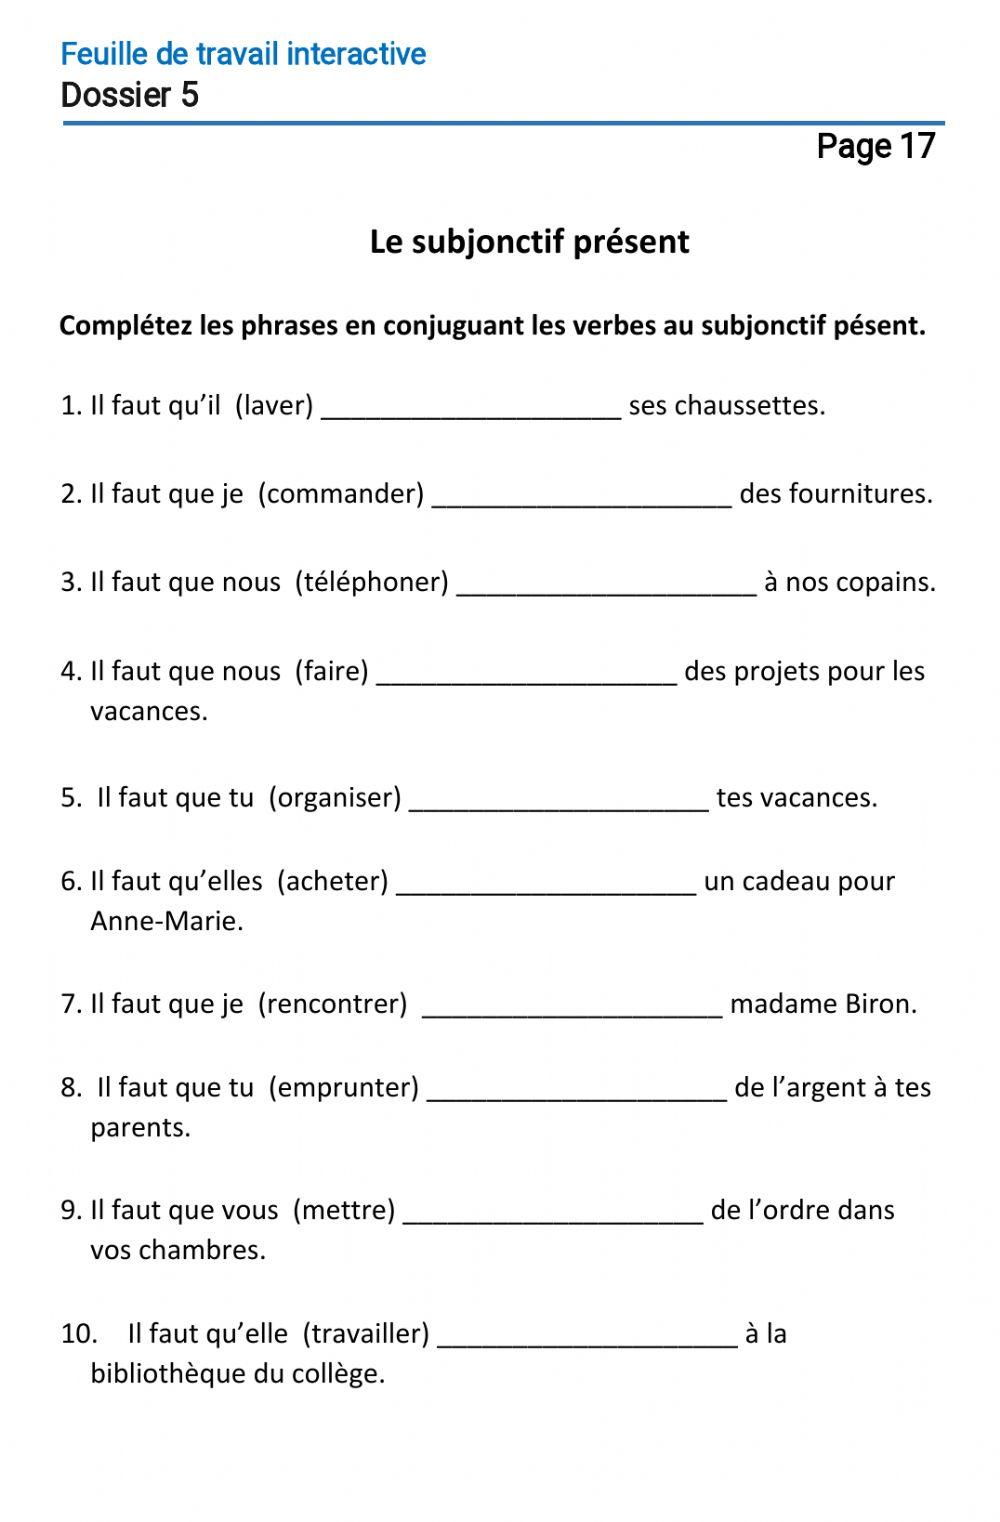 Le français-10 (повыш.)-Dossier 5-Page 17 (2)